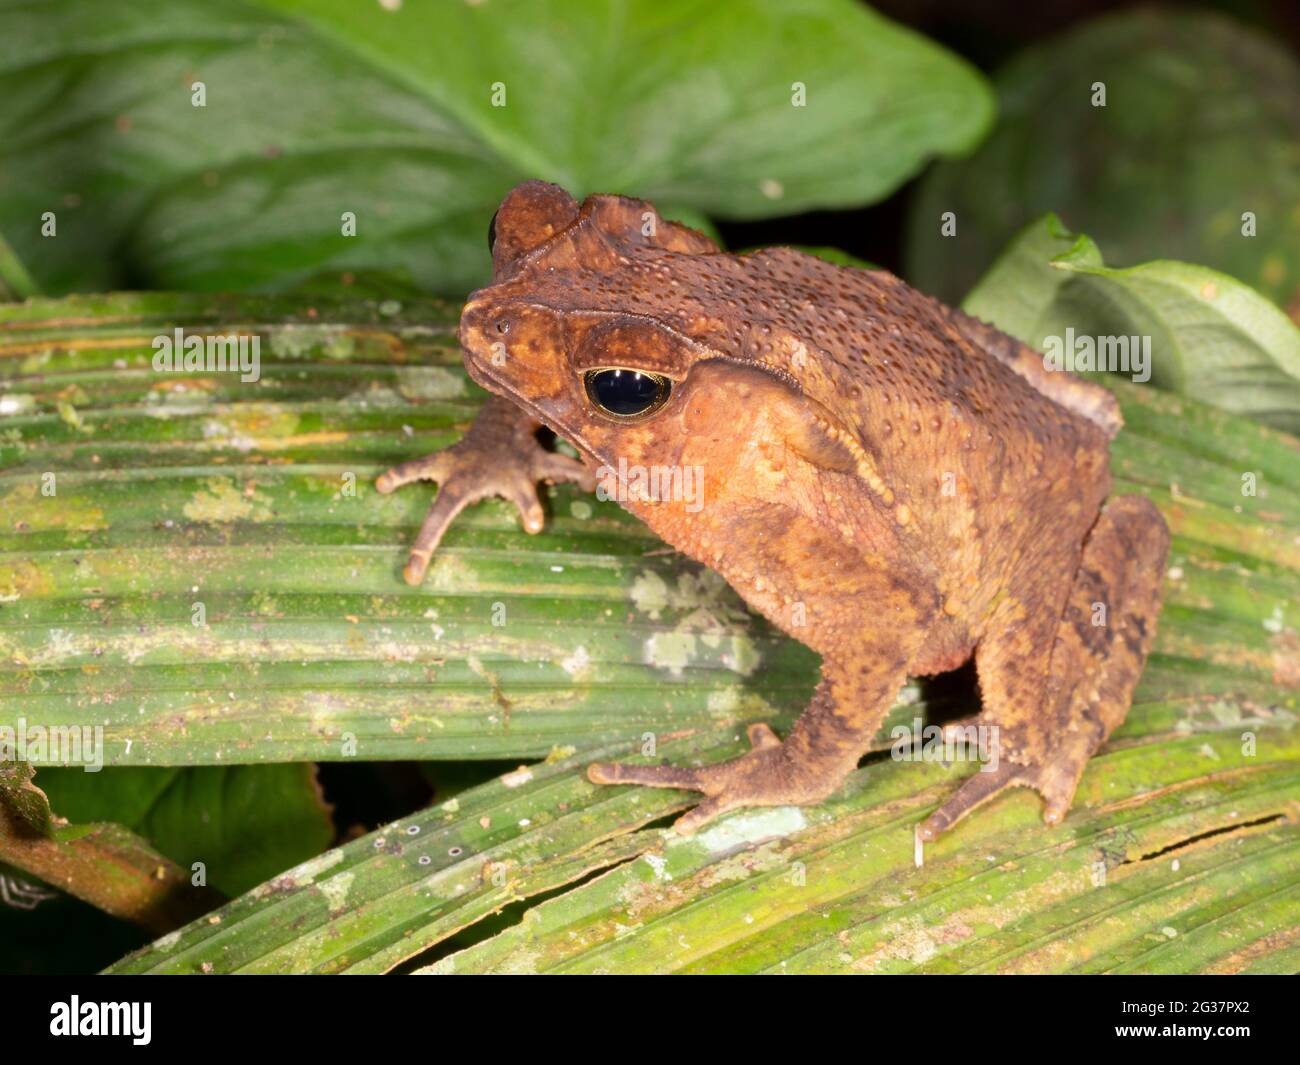 Bosque Crested Toad (Rhinella margaritifera), provincia de Morona Santiago, Ecuador Foto de stock